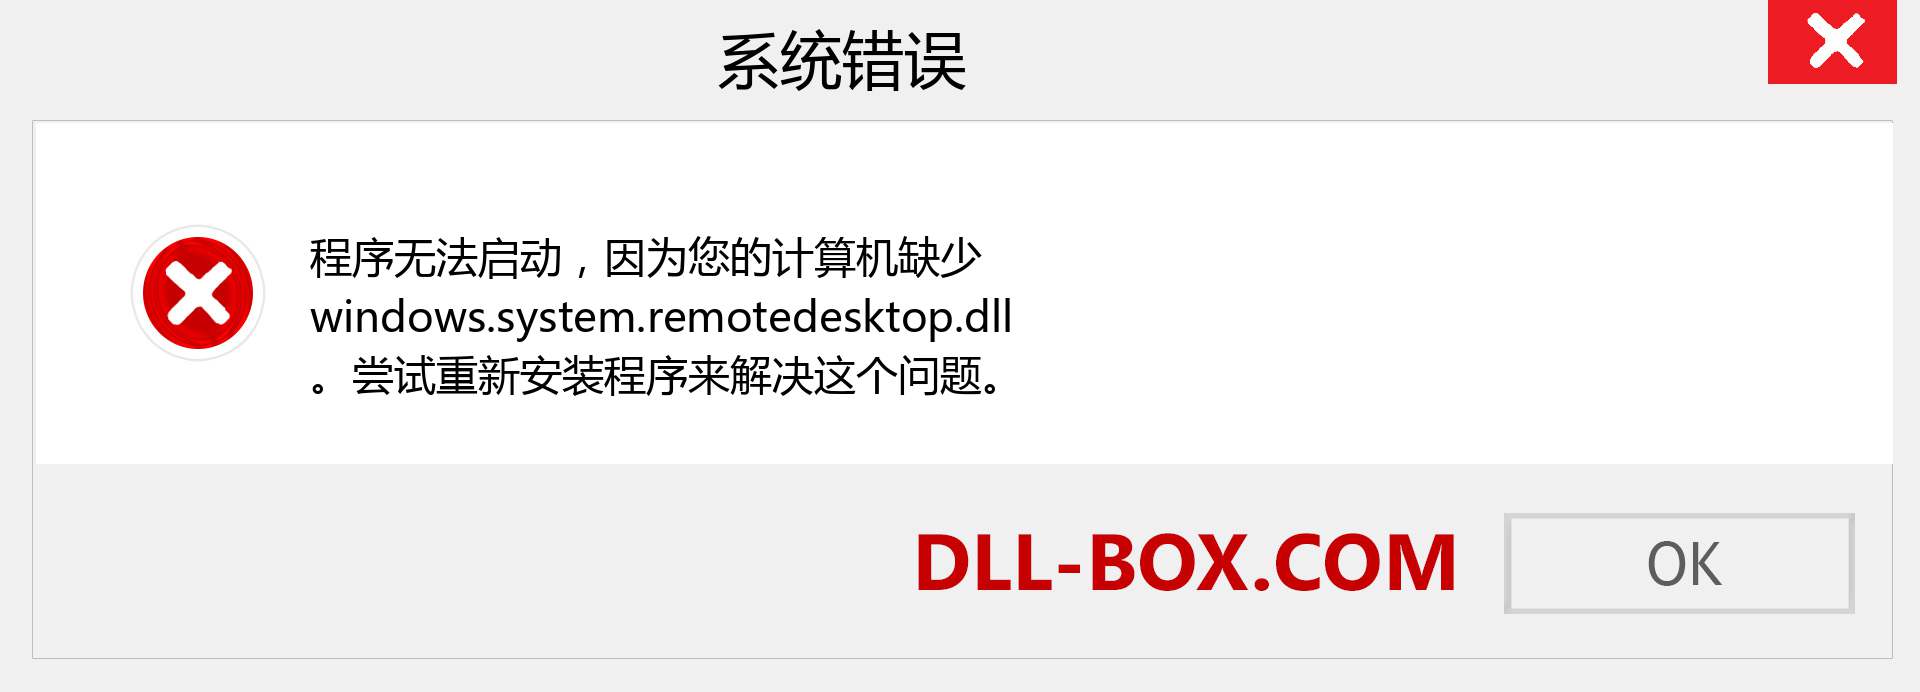 windows.system.remotedesktop.dll 文件丢失？。 适用于 Windows 7、8、10 的下载 - 修复 Windows、照片、图像上的 windows.system.remotedesktop dll 丢失错误